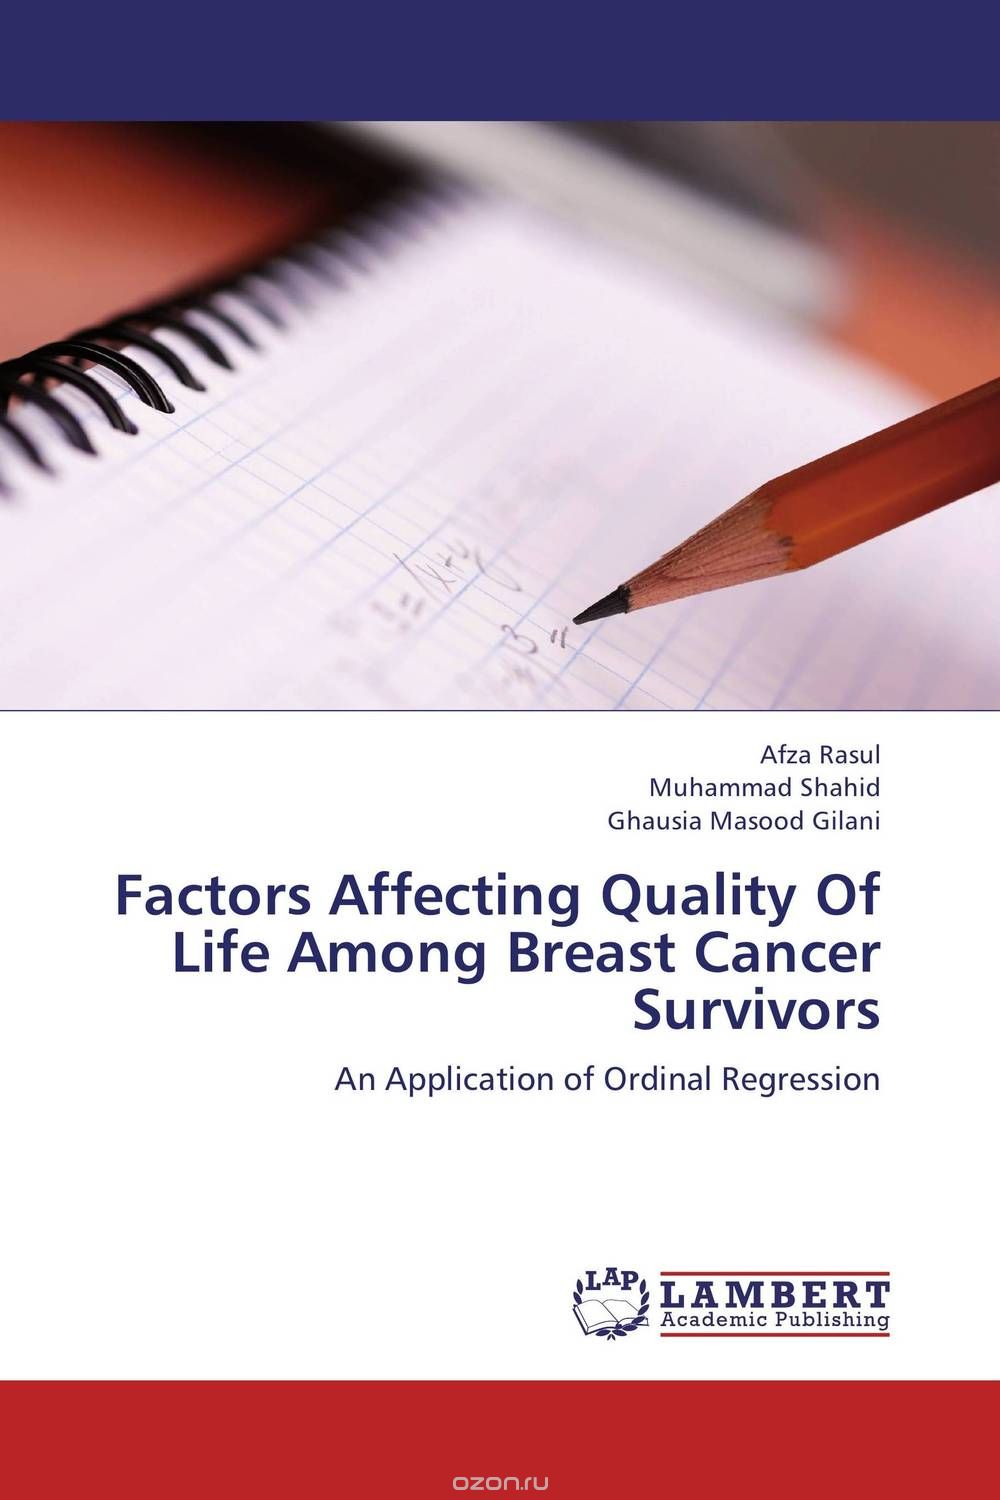 Скачать книгу "Factors Affecting Quality Of Life Among Breast Cancer Survivors"